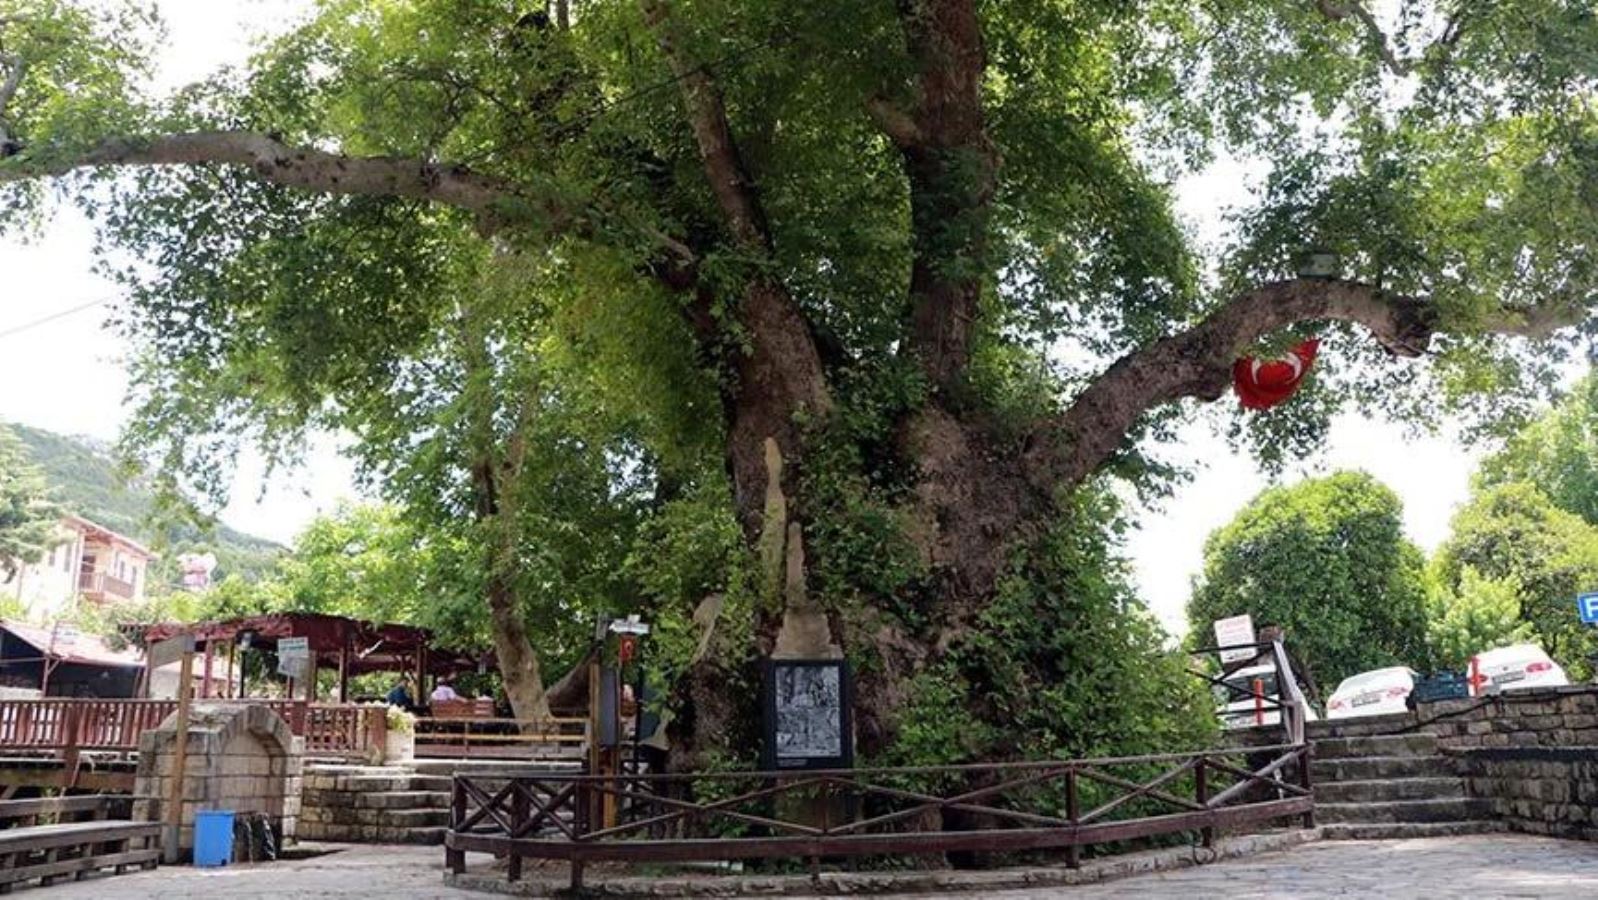 Üç bin yıllık kutsal ağaç: Musa Ağacı